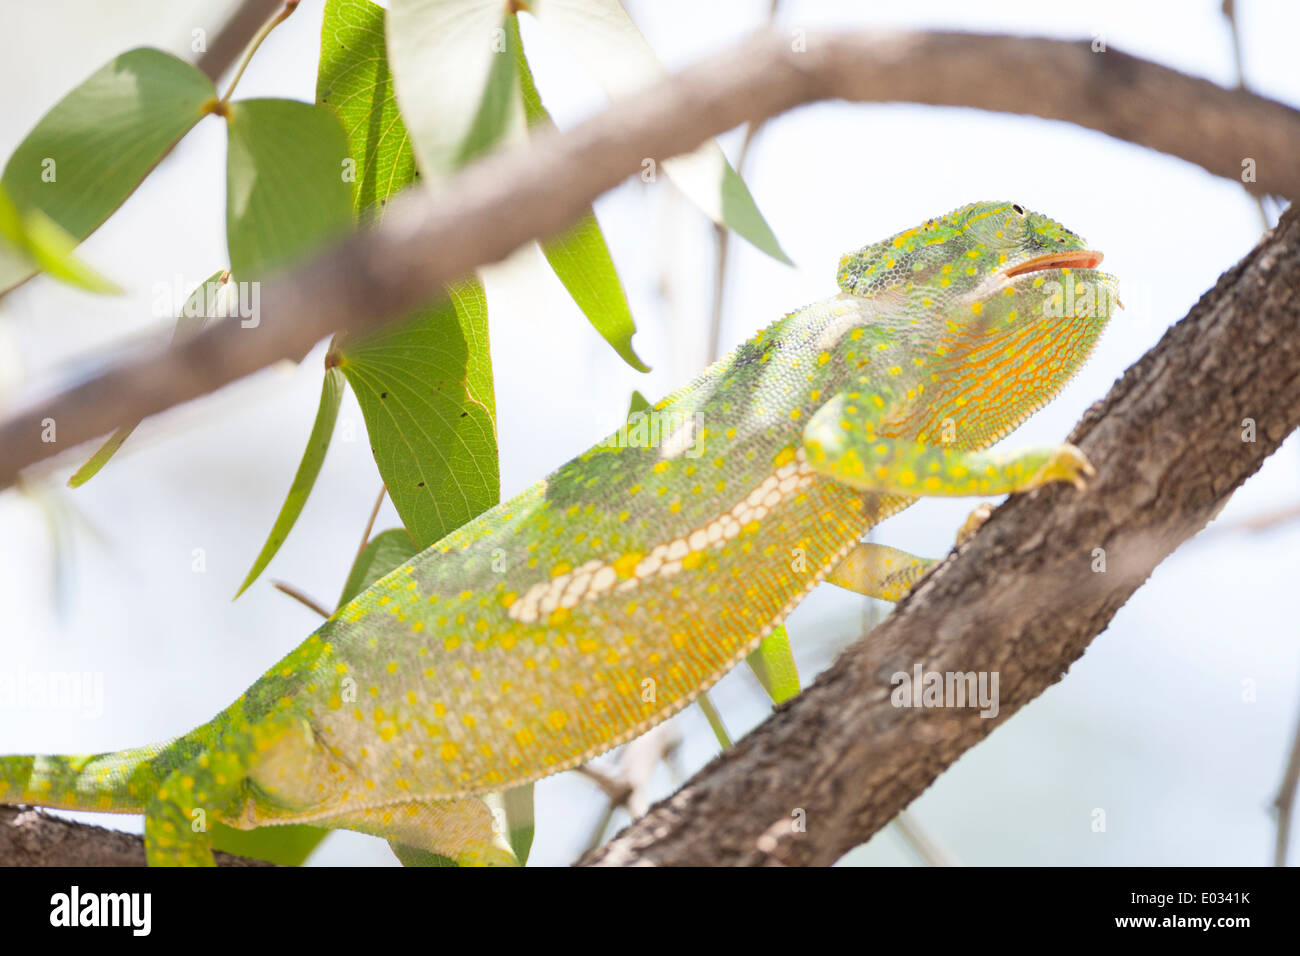 ETOSHA, NAMIBIA Flap-necked chameleon (Chamaeleo dilepis) in habitat. Stock Photo